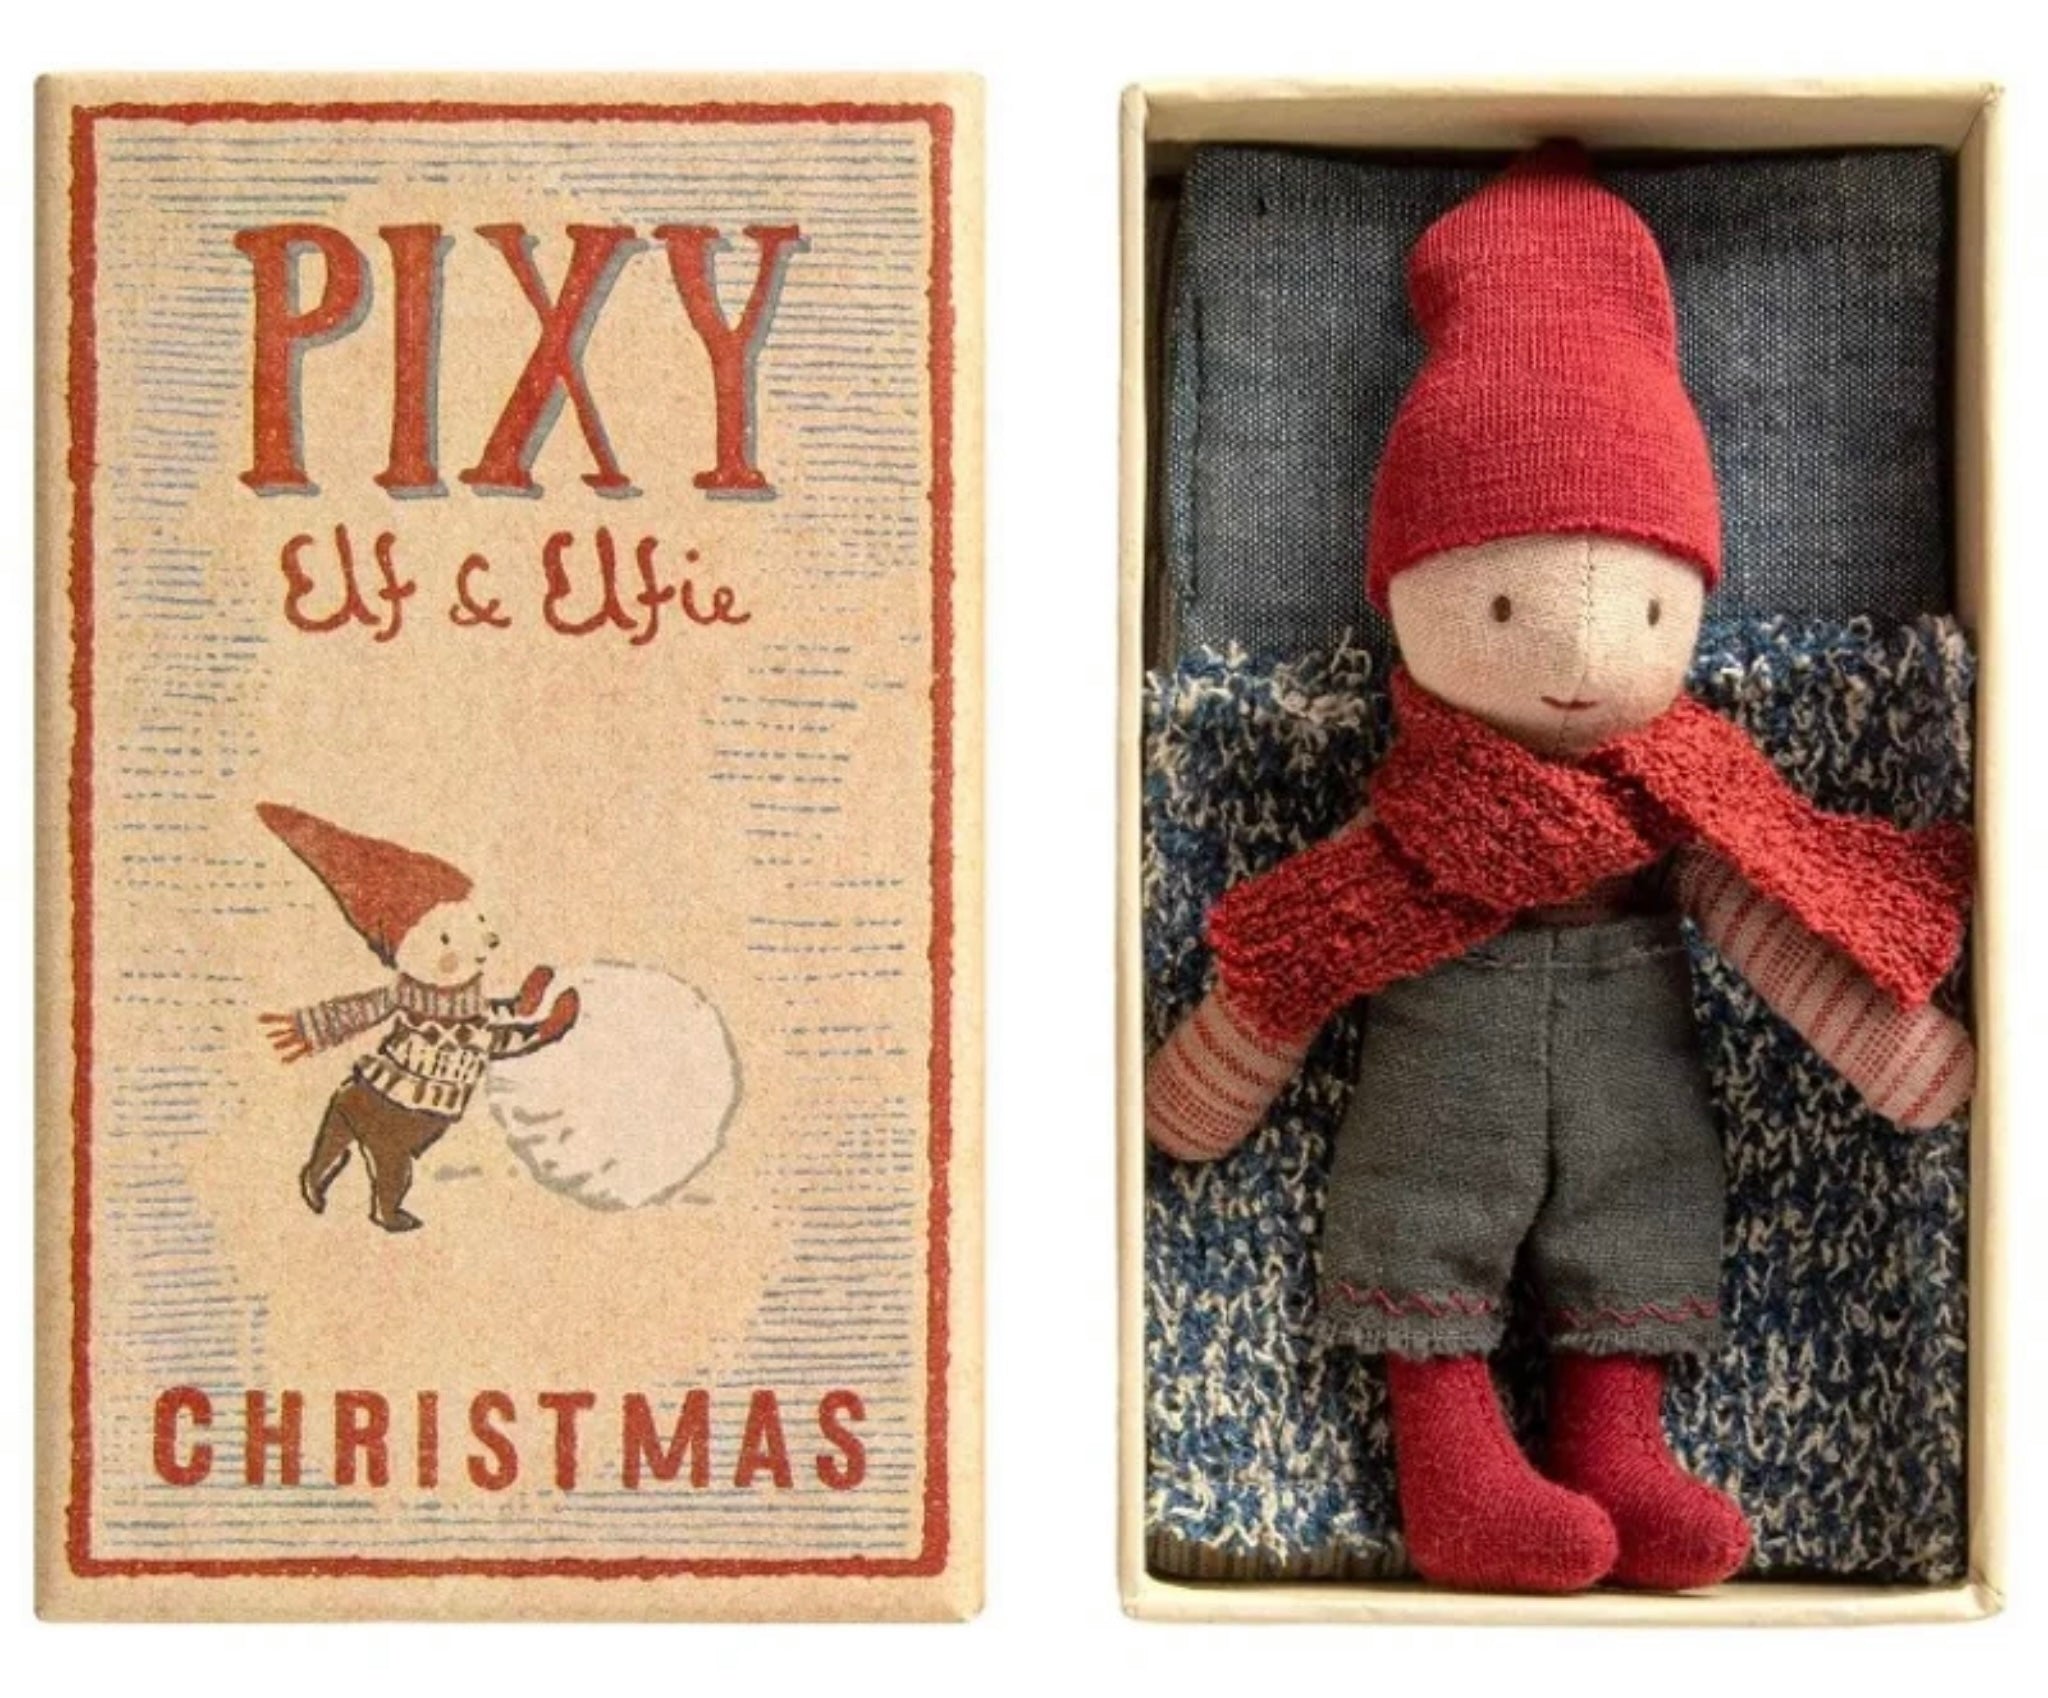 Maileg Christmas Pixie Elfie Boy in Box